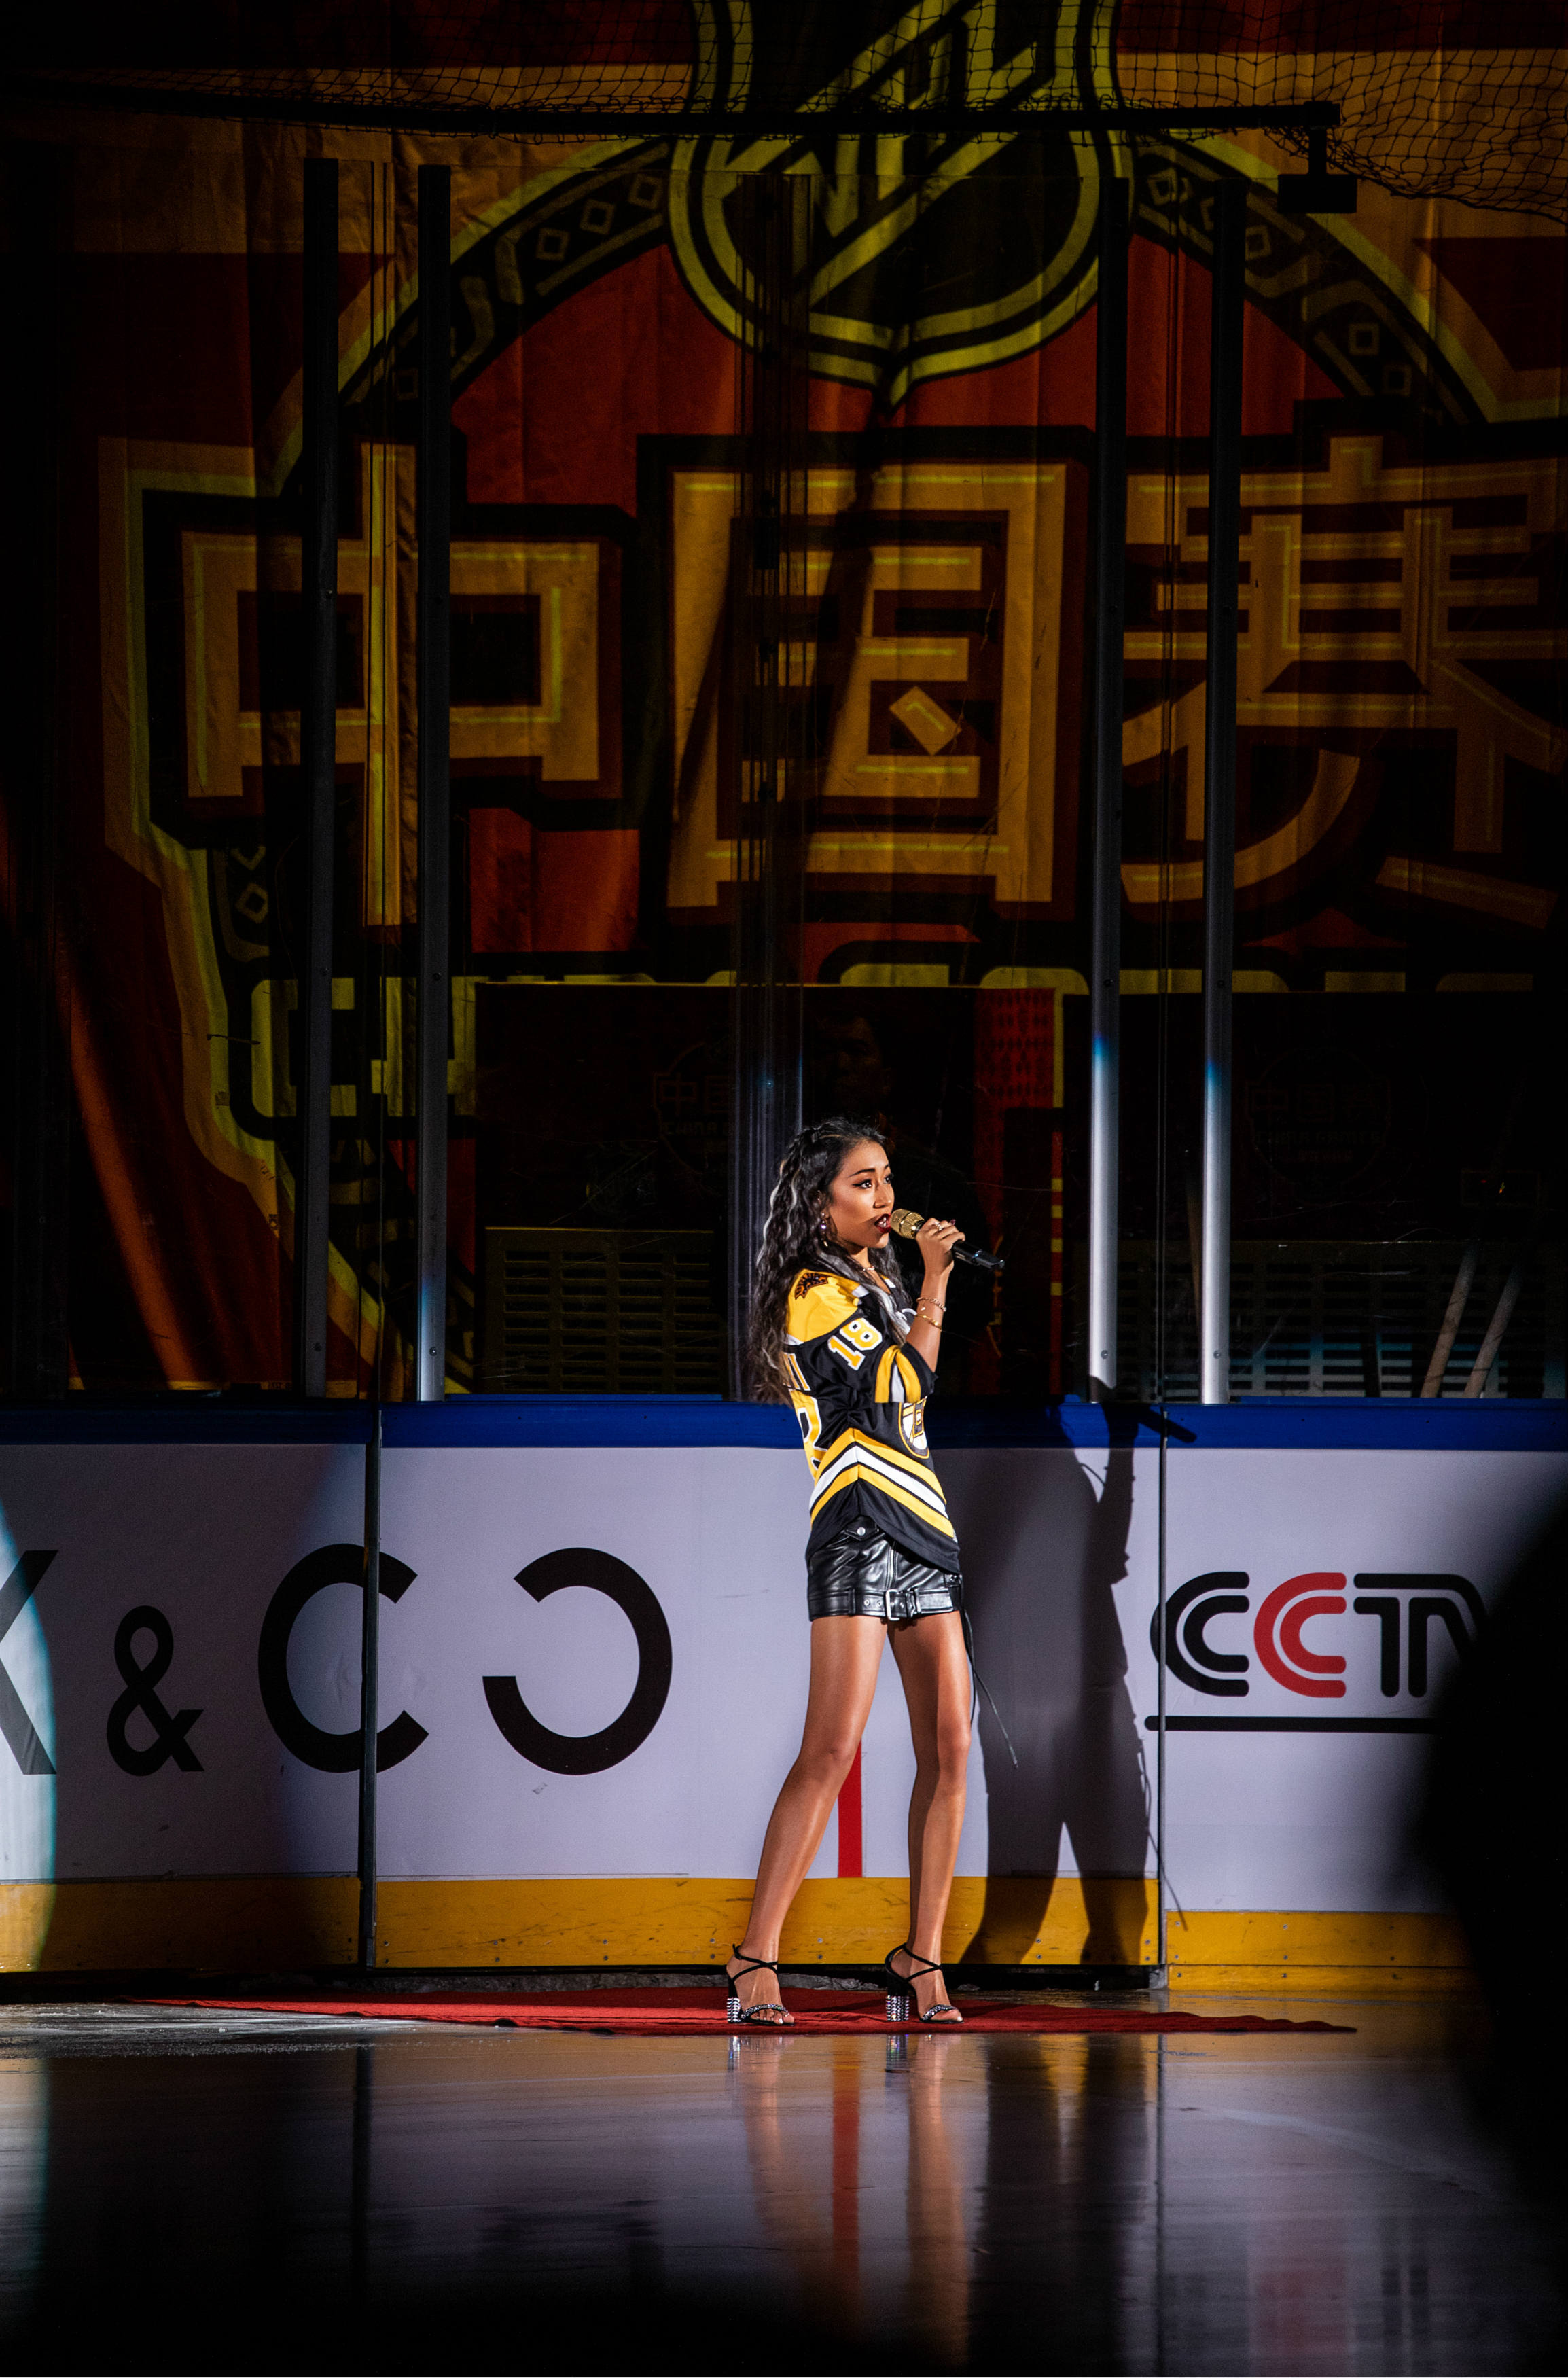 吉克隽逸领唱NHL中国赛北京站  与聂远张铭恩同场竞技